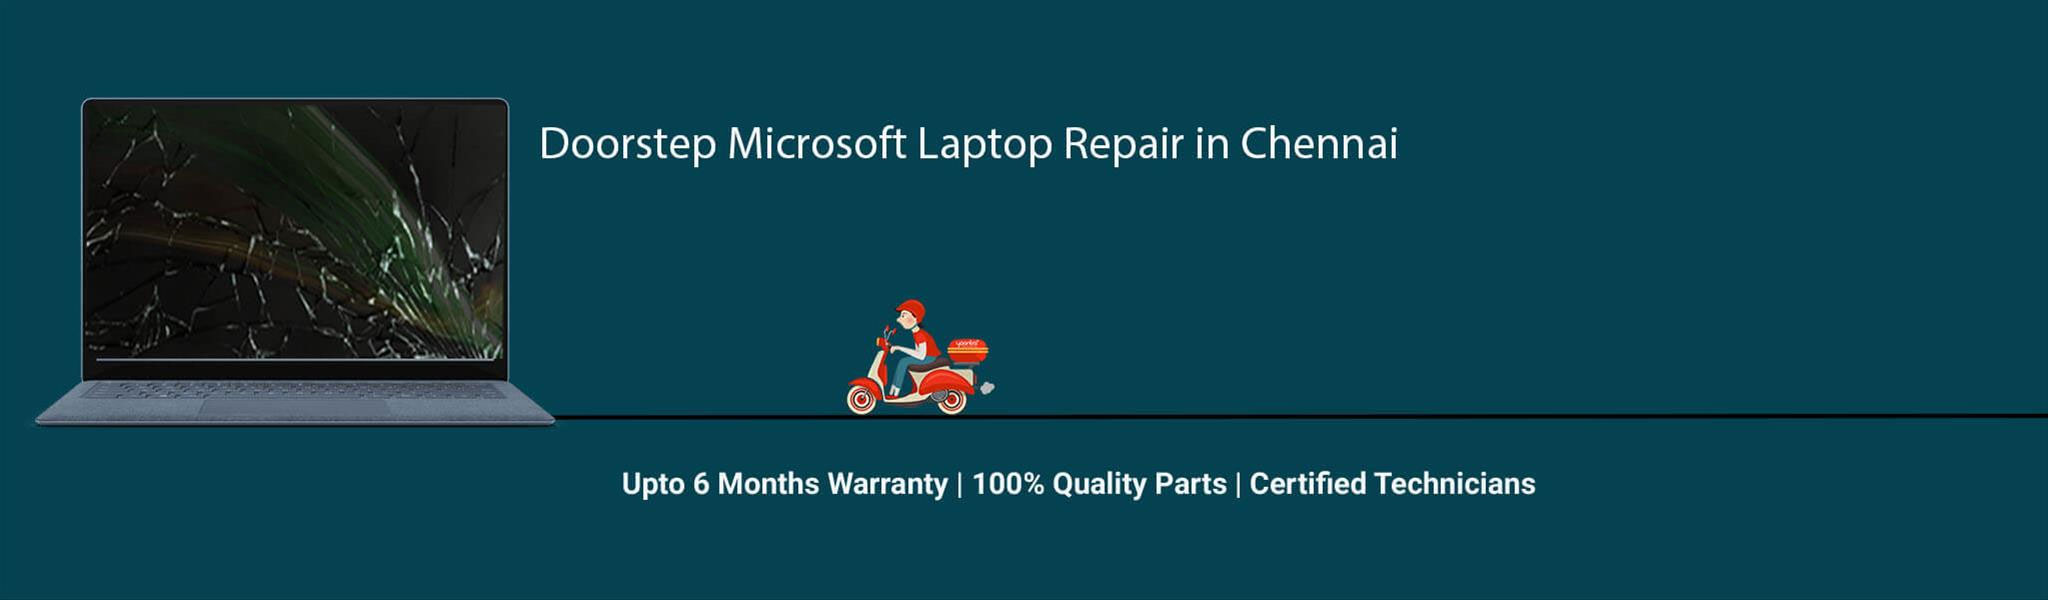 Microsoft-laptop-banner-chennai.jpg